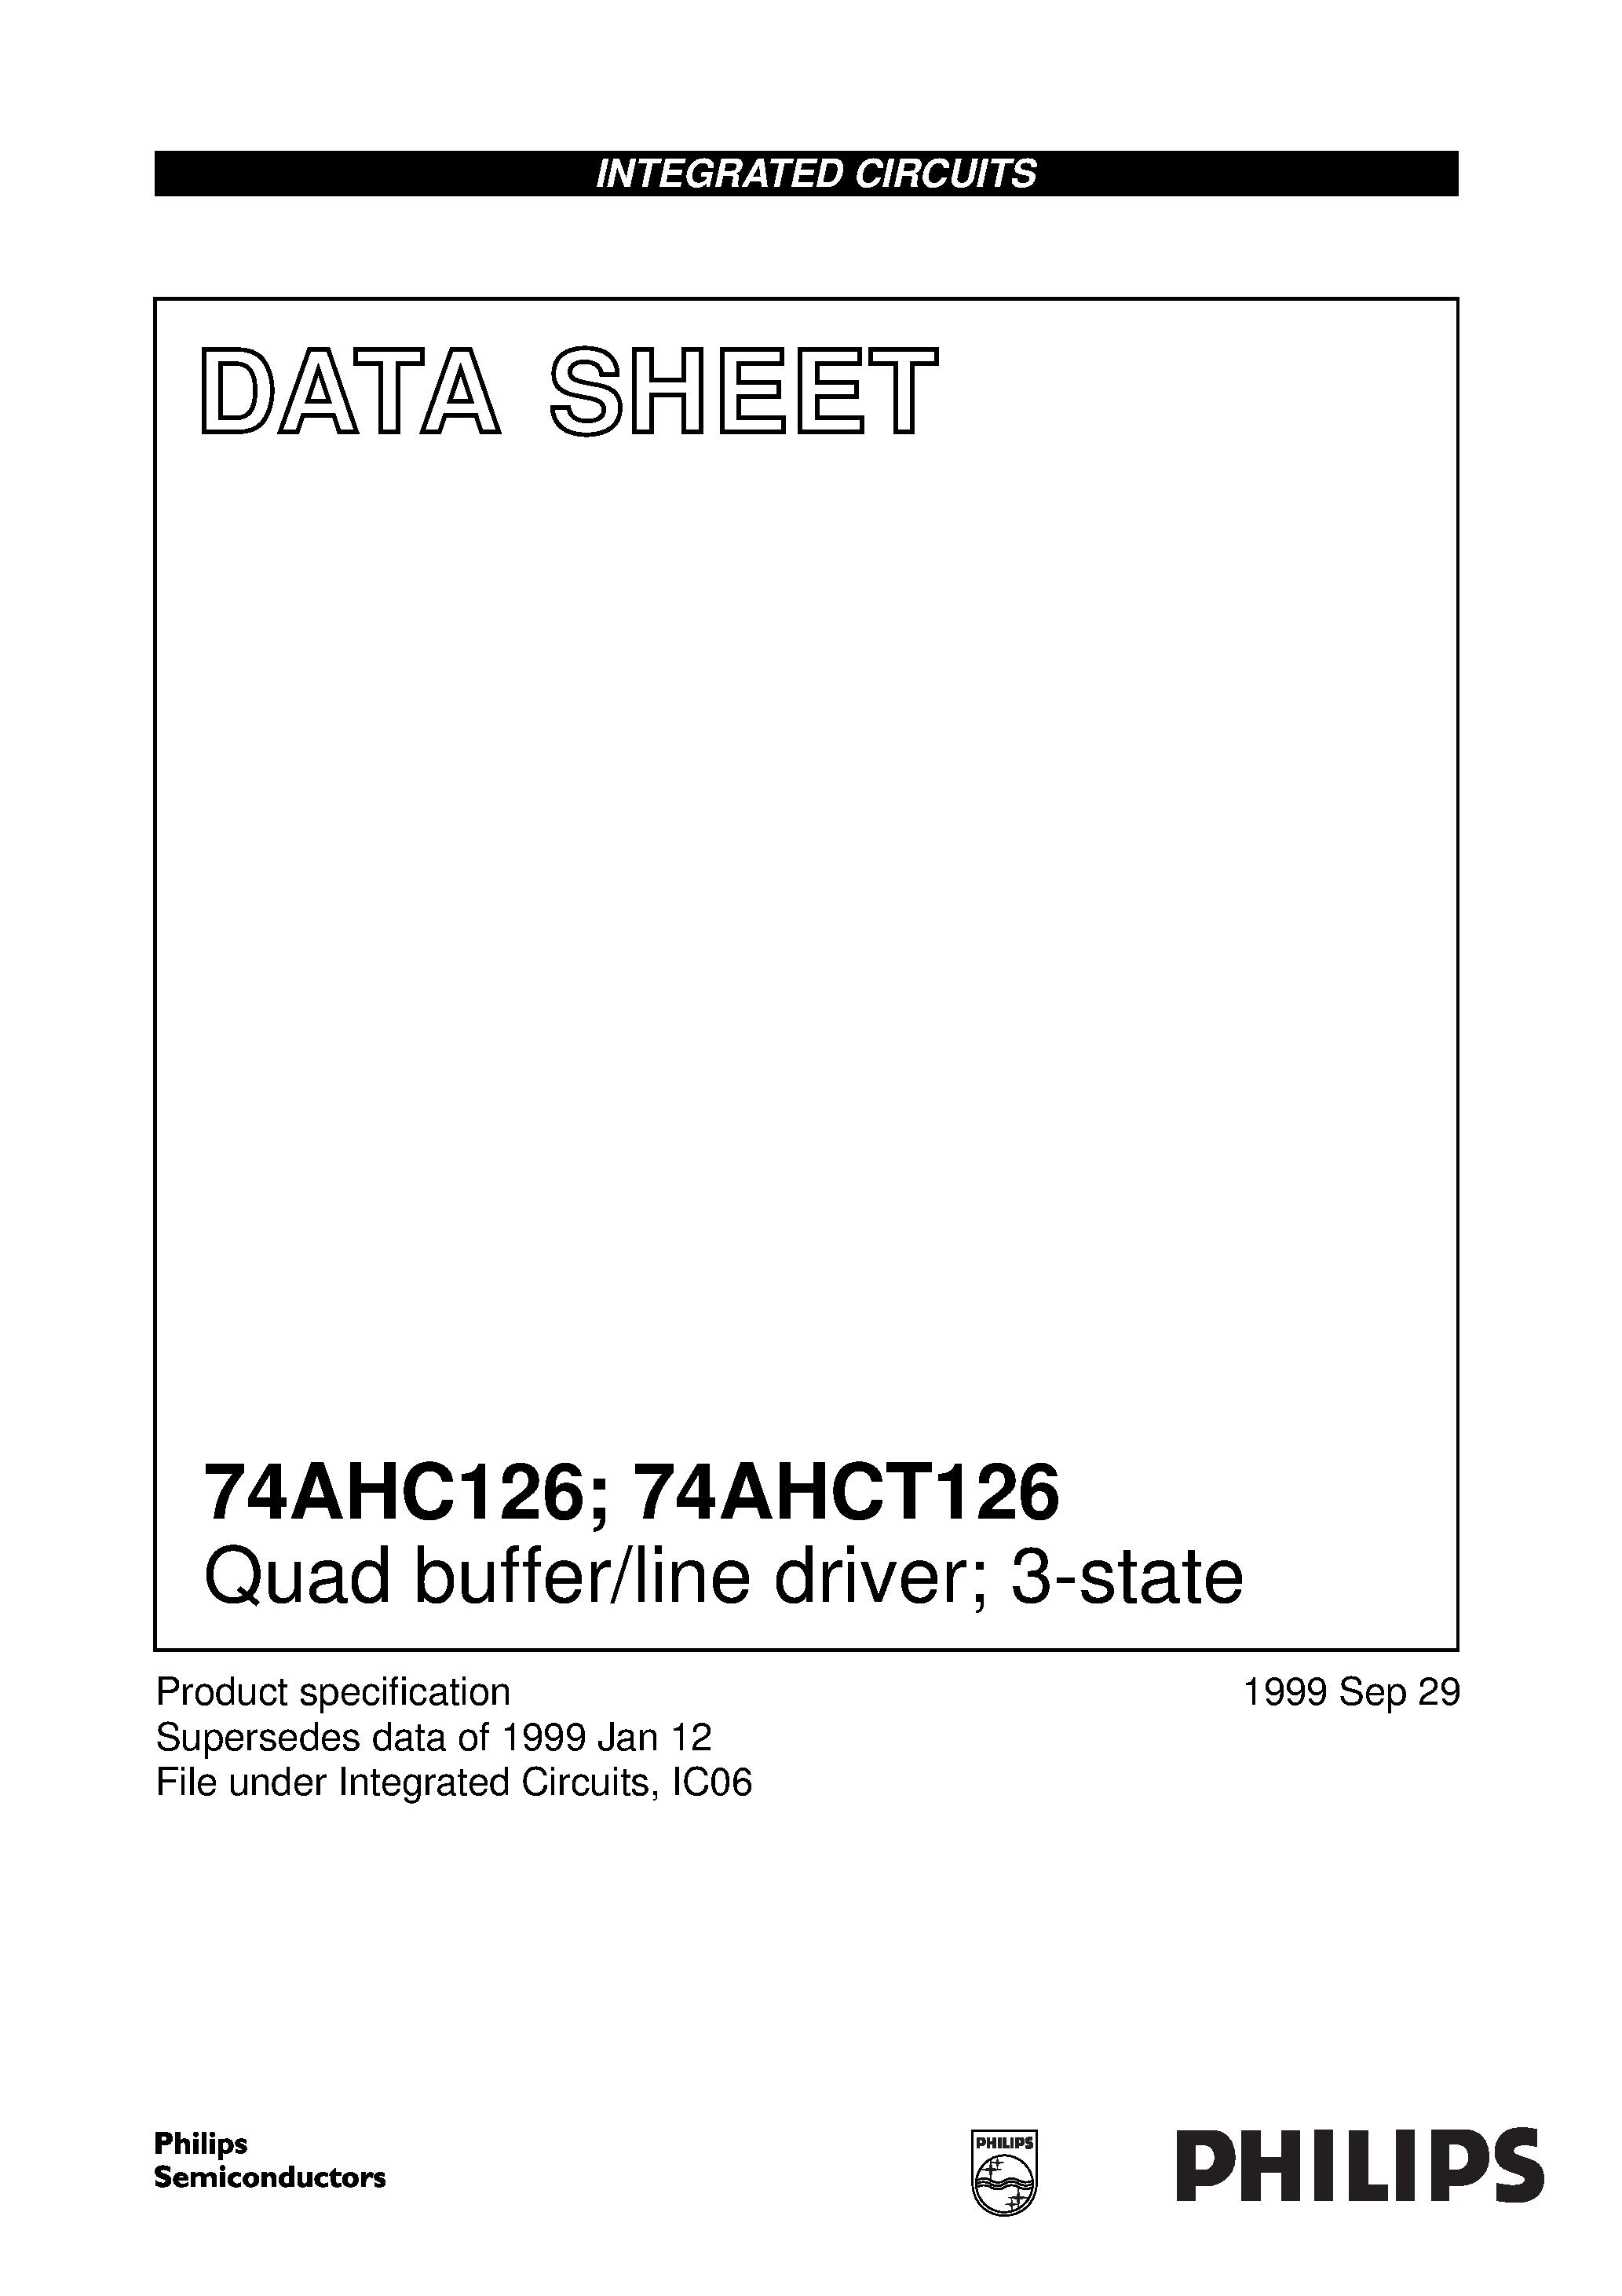 Даташит 74AHC126D - Quad buffer/line driver; 3-state страница 1